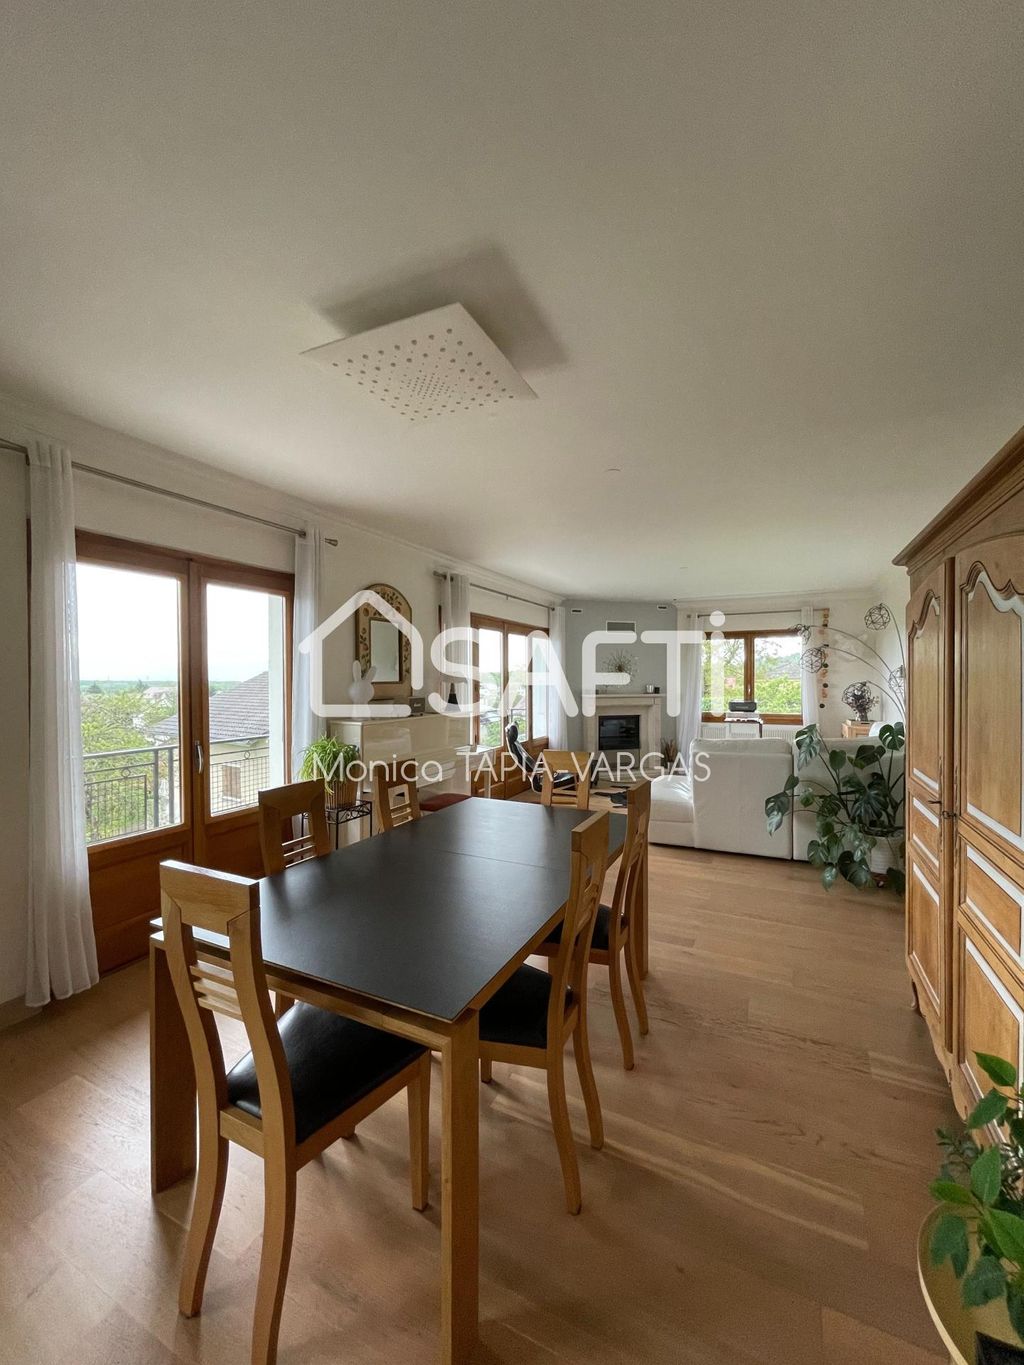 Achat maison à vendre 5 chambres 174 m² - Divonne-les-Bains